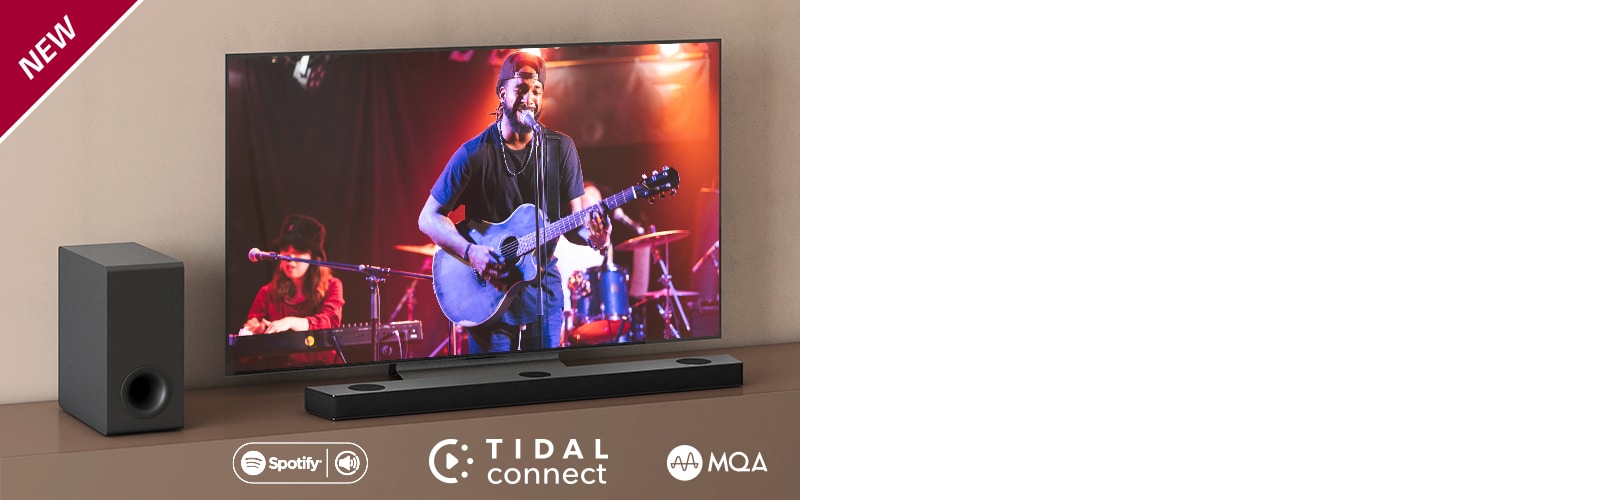 Η τηλεόραση LG είναι τοποθετημένη στο καφέ ράφι, και το LG Sound Bar S75Q βρίσκεται μπροστά από την τηλεόραση. Το υπογούφερ βρίσκεται στην αριστερή πλευρά της τηλεόρασης. Η τηλεόραση δείχνει μια σκηνή από συναυλία. Το σήμα NEW εμφανίζεται στην επάνω αριστερή γωνία.